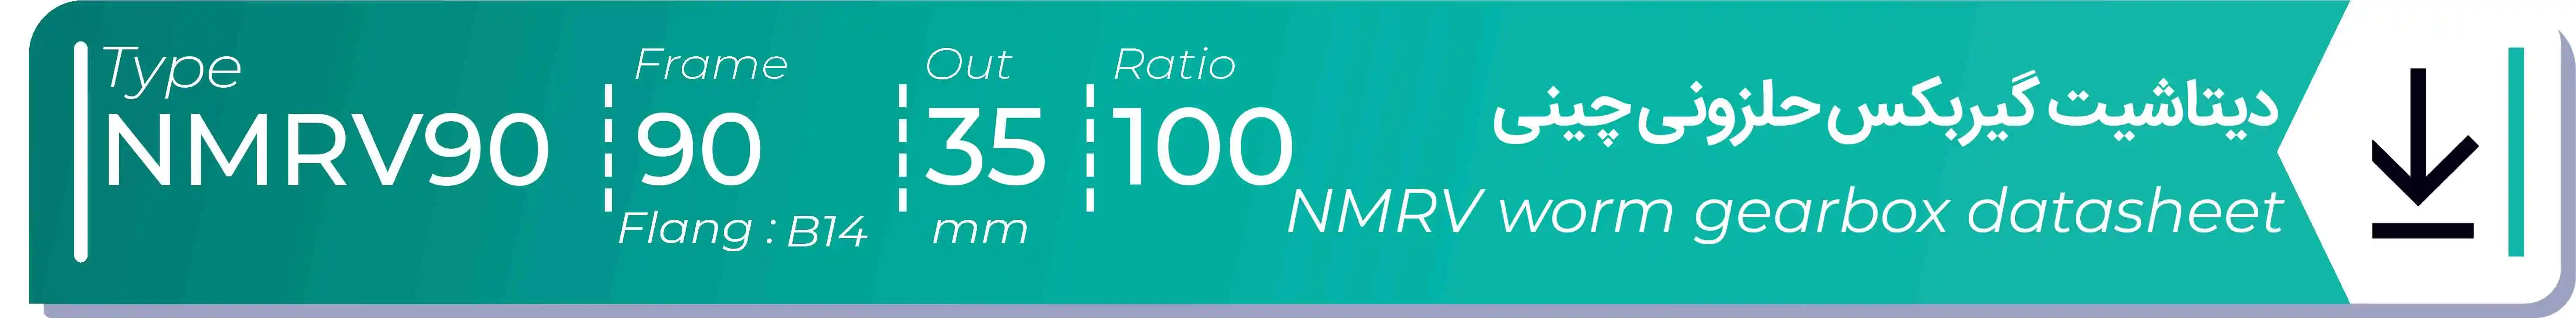  دیتاشیت و مشخصات فنی گیربکس حلزونی چینی   NMRV90  -  با خروجی 35- میلی متر و نسبت100 و فریم 90